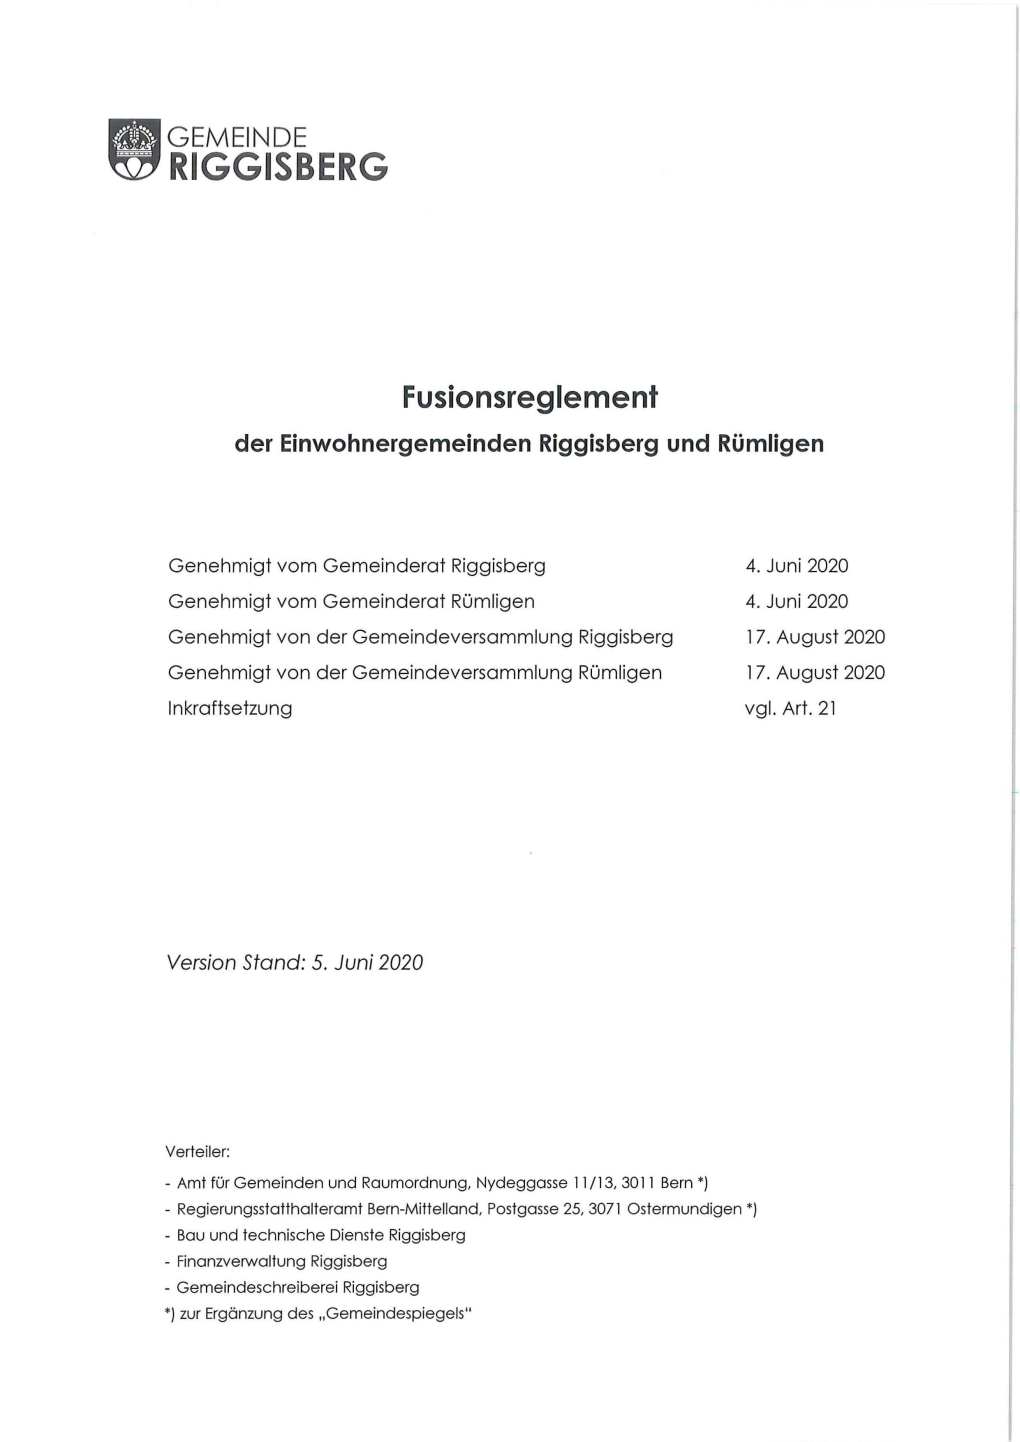 Riggisberg-Rümligen-Fusionsreglement.Pdf